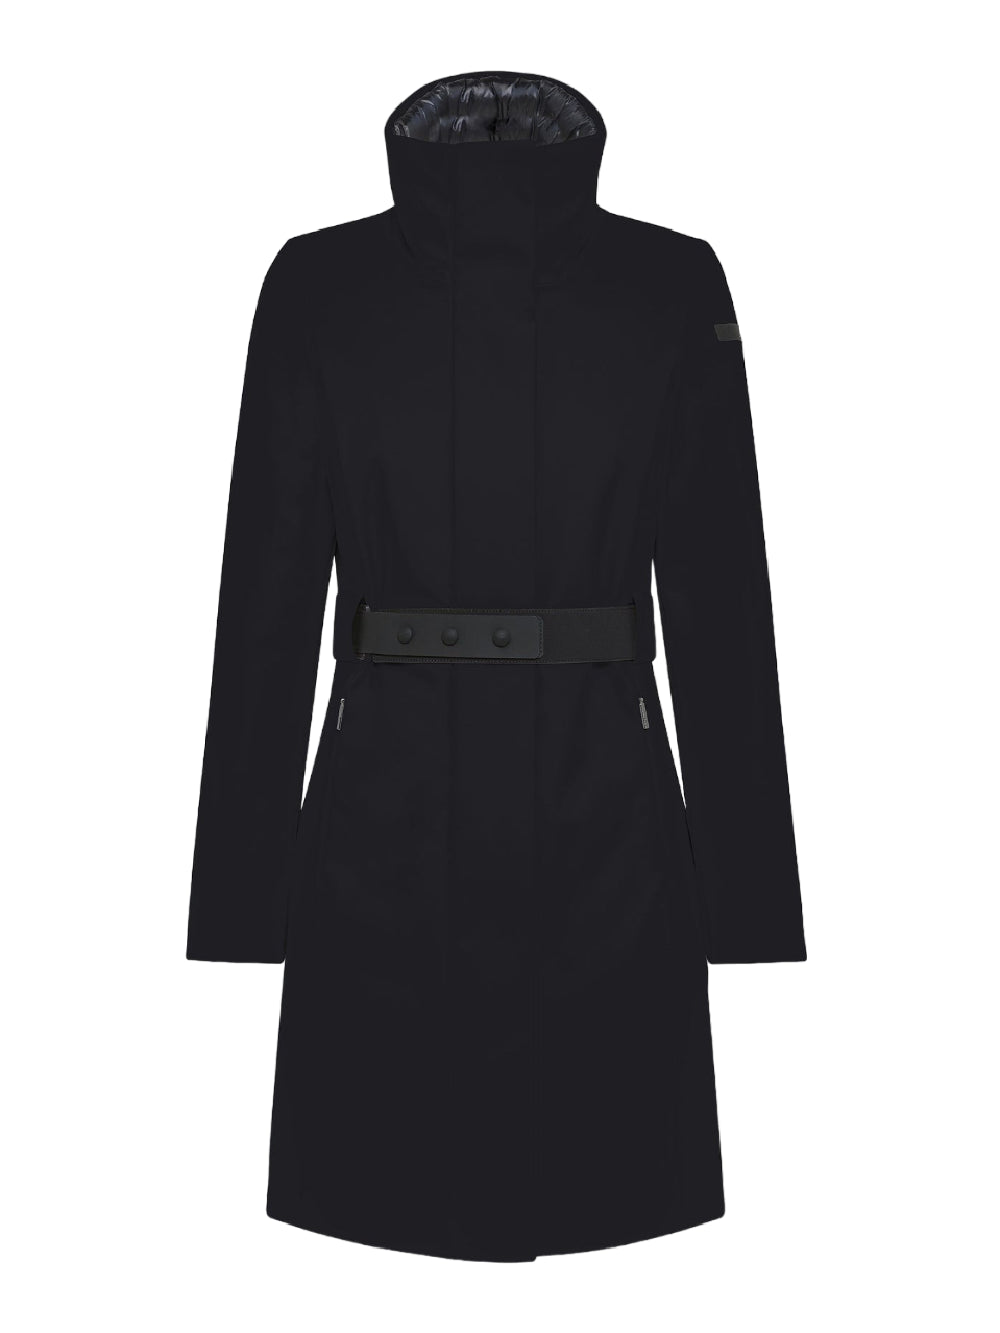 RRD Roberto Ricci Designs Giubbino Donna Winter Coat Wom Jkt W23509 Nero